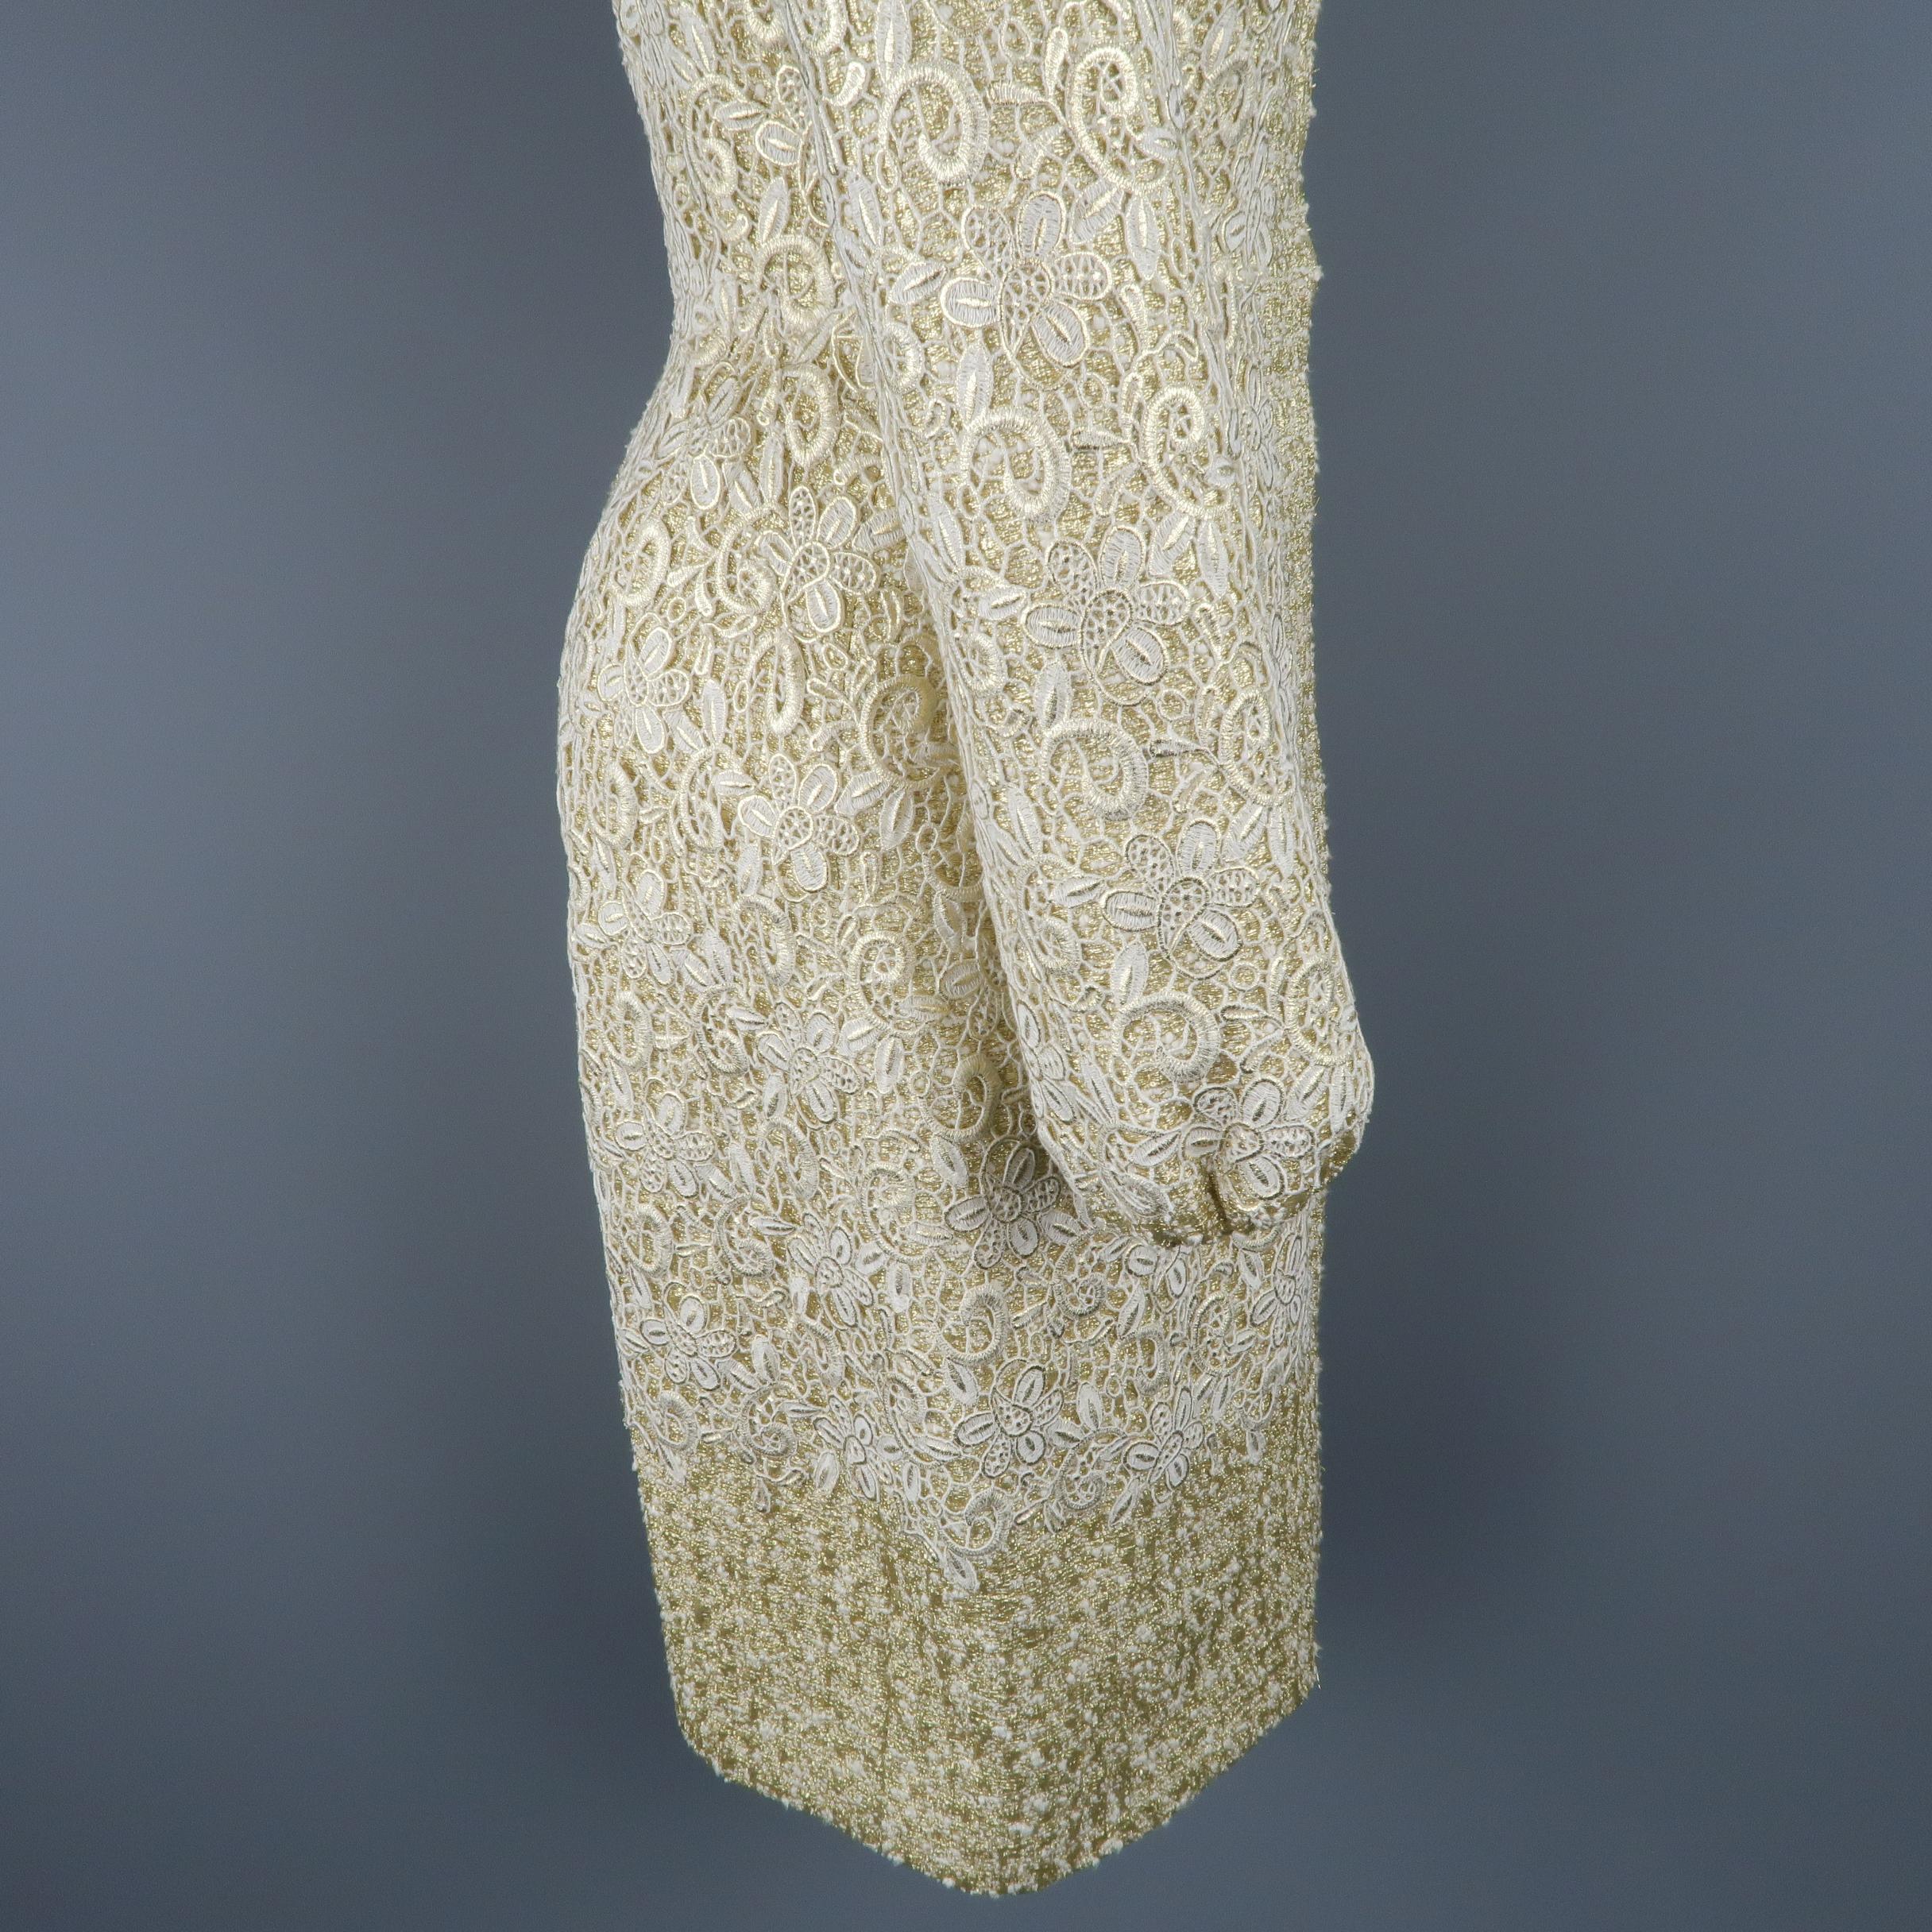 GIAMBATTISTA VALLI Metallic Gold Cotton / Silk Lace Overlay Cocktail Coat-Dress 3